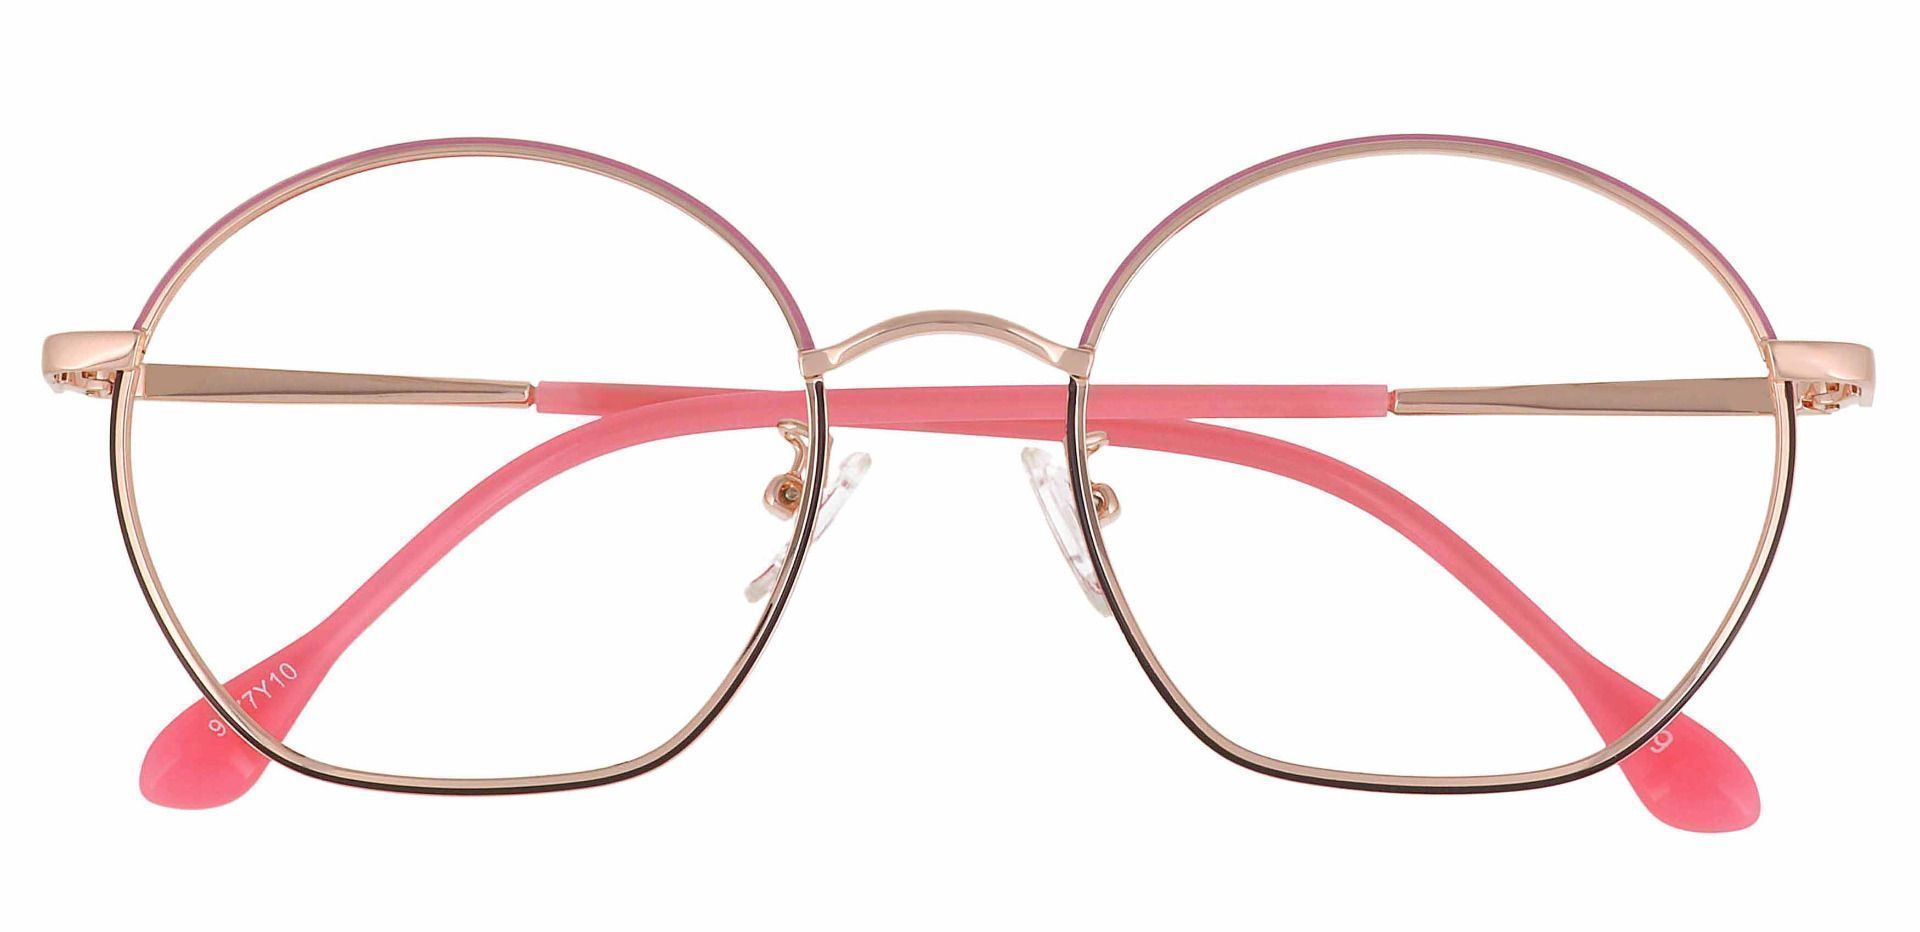 Rose Geometric Reading Glasses - Rose Gold | Women's Eyeglasses | Payne ...